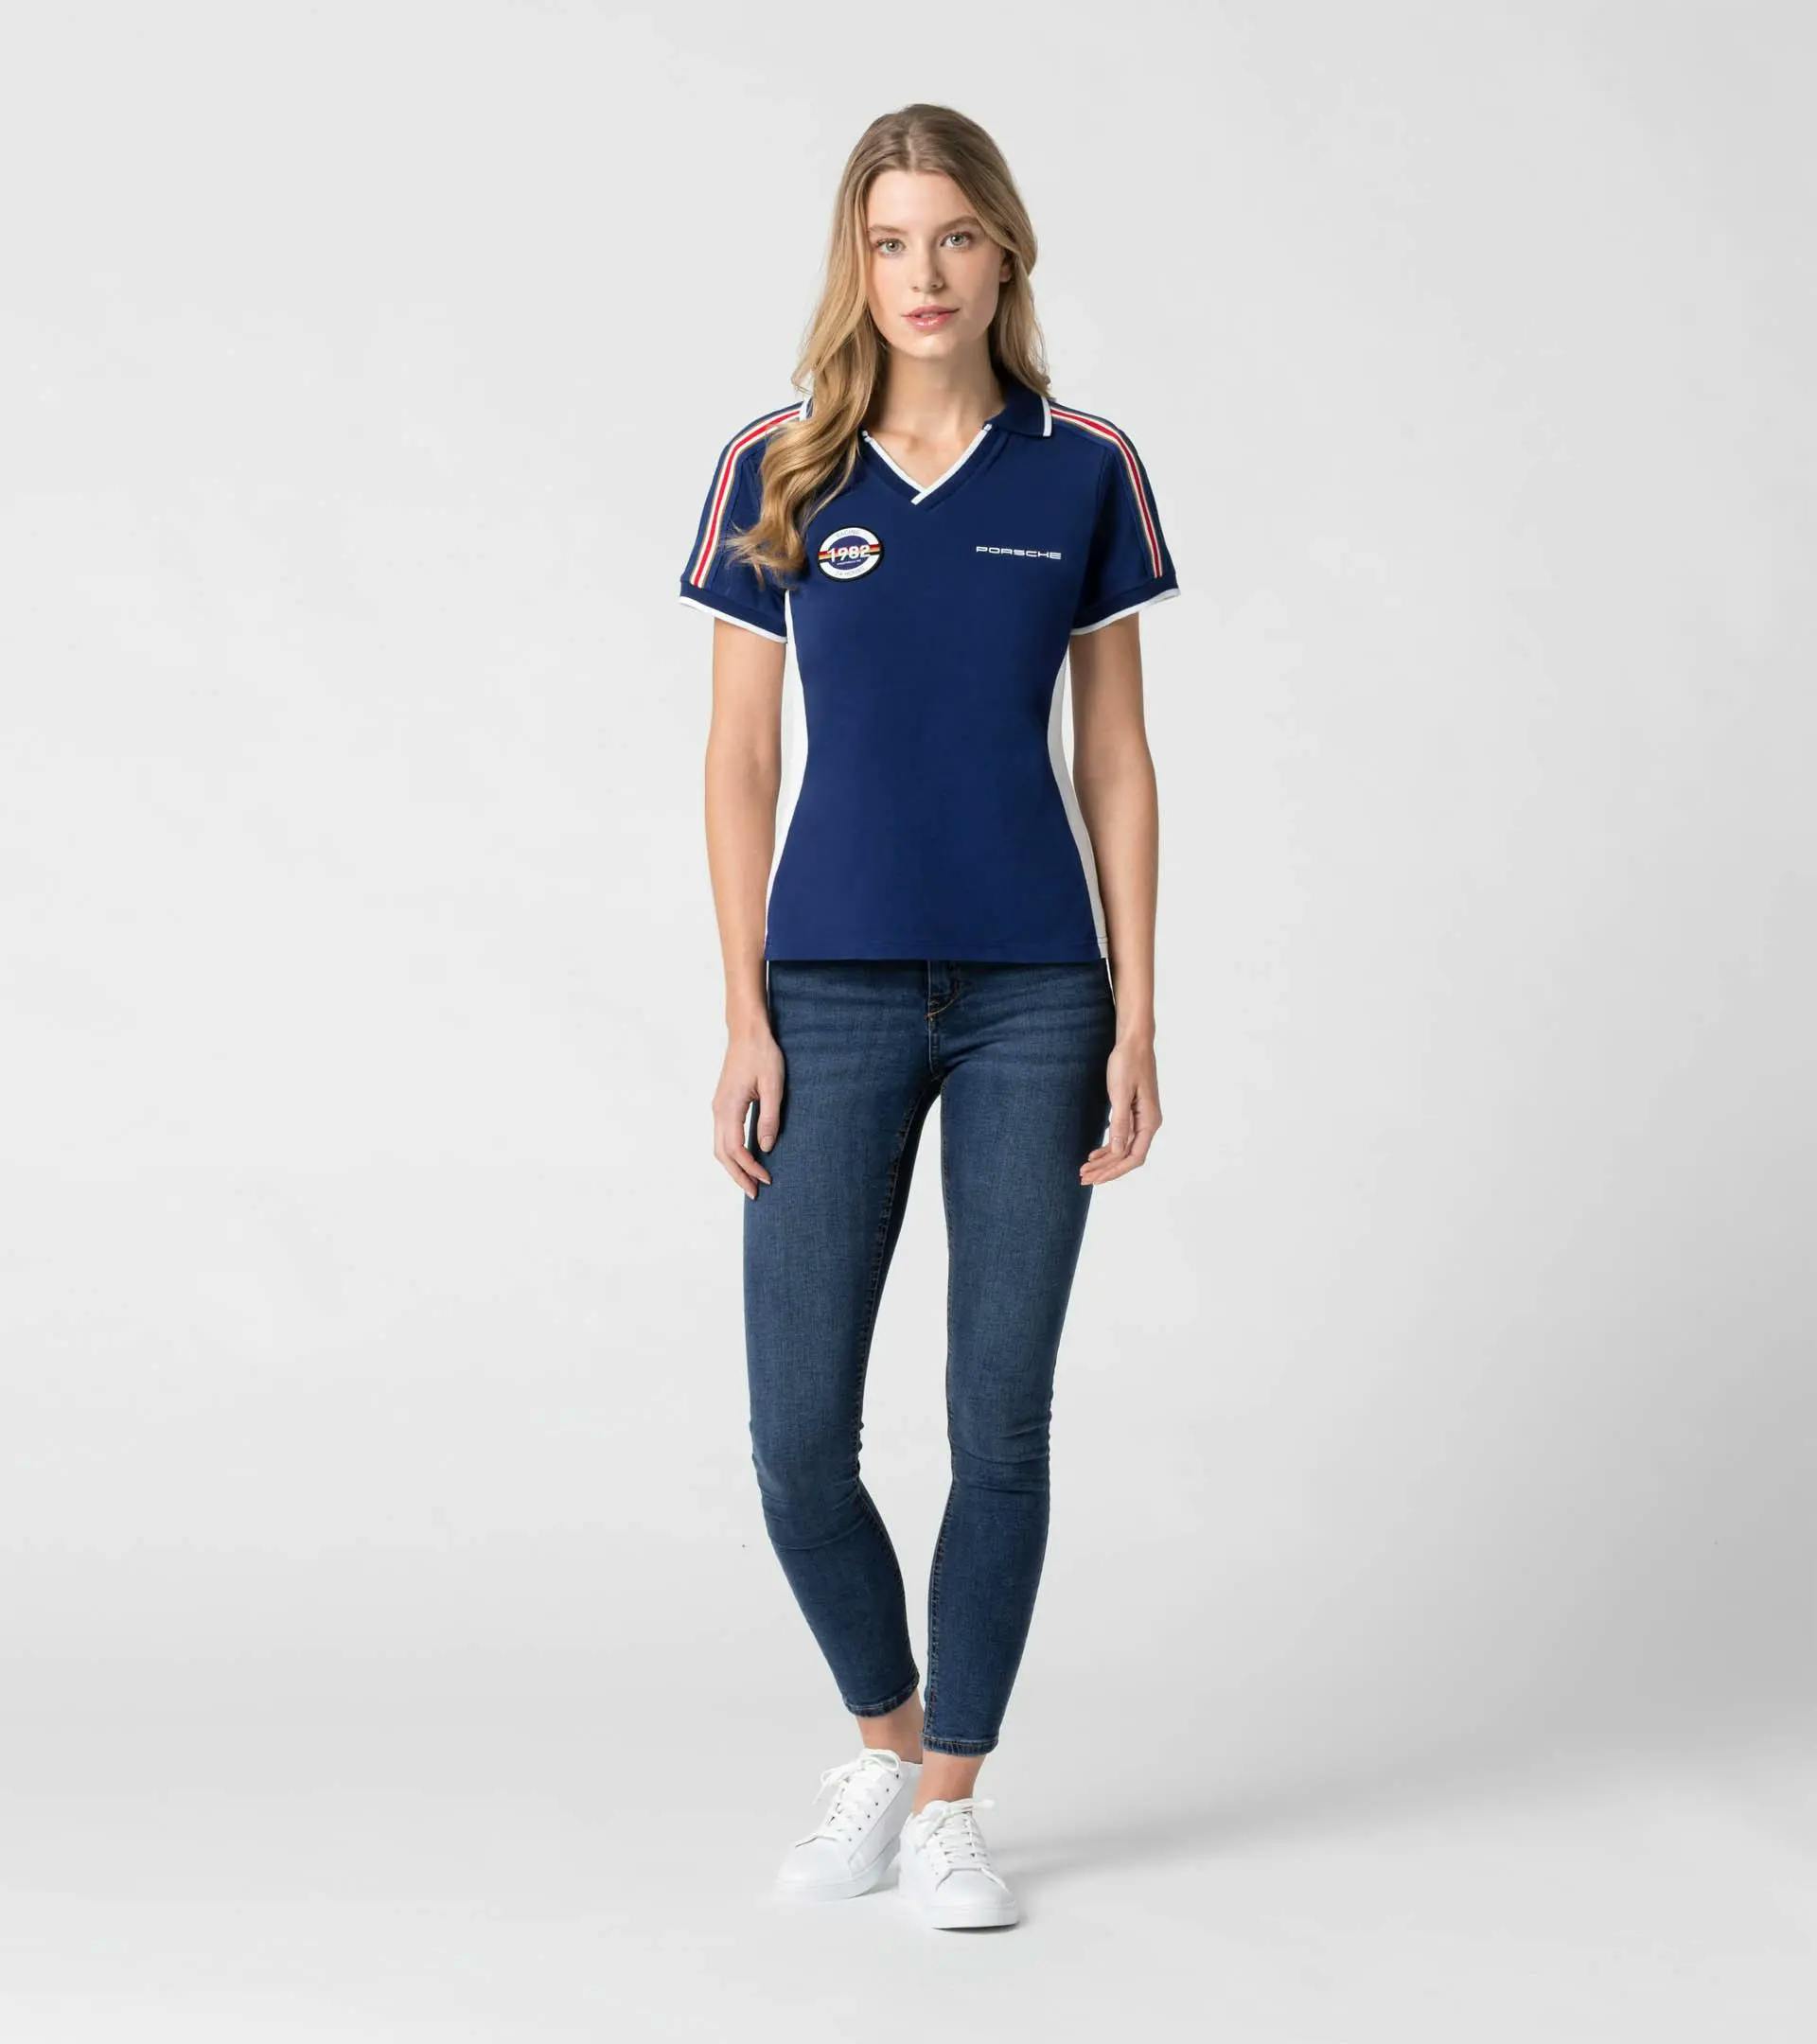 Women's polo shirt – Racing thumbnail 5